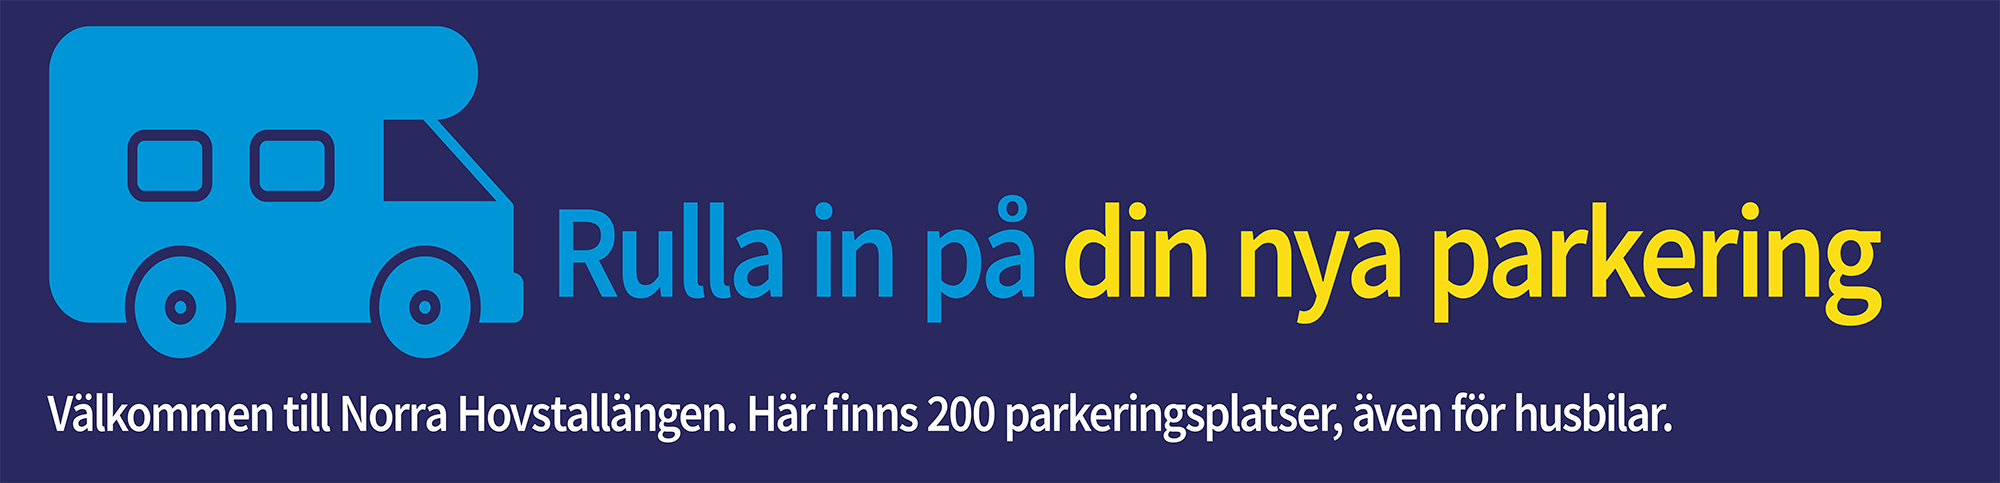  Norra Hovstallängen är en ny parkering invid Kungsgatan i centrala Uppsala. 